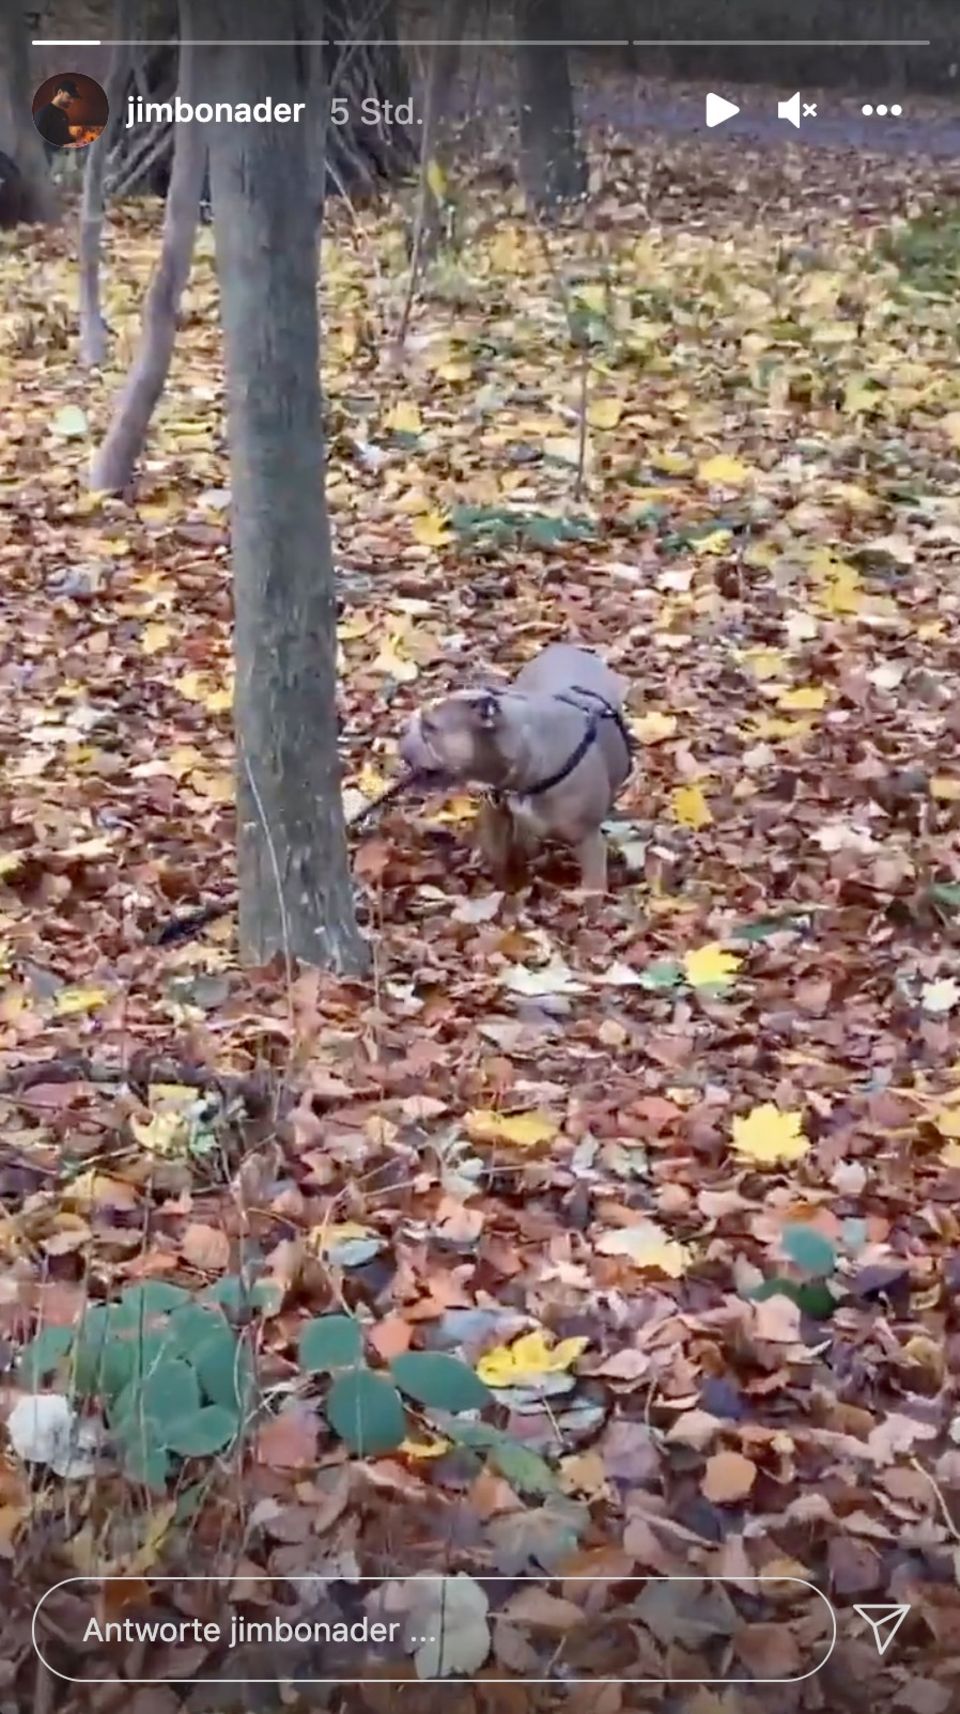 Jimi Blue Ochsenknecht teilt in seiner Instagram Story ein Video vom Spaziergang mit Yeliz Koc' Hund